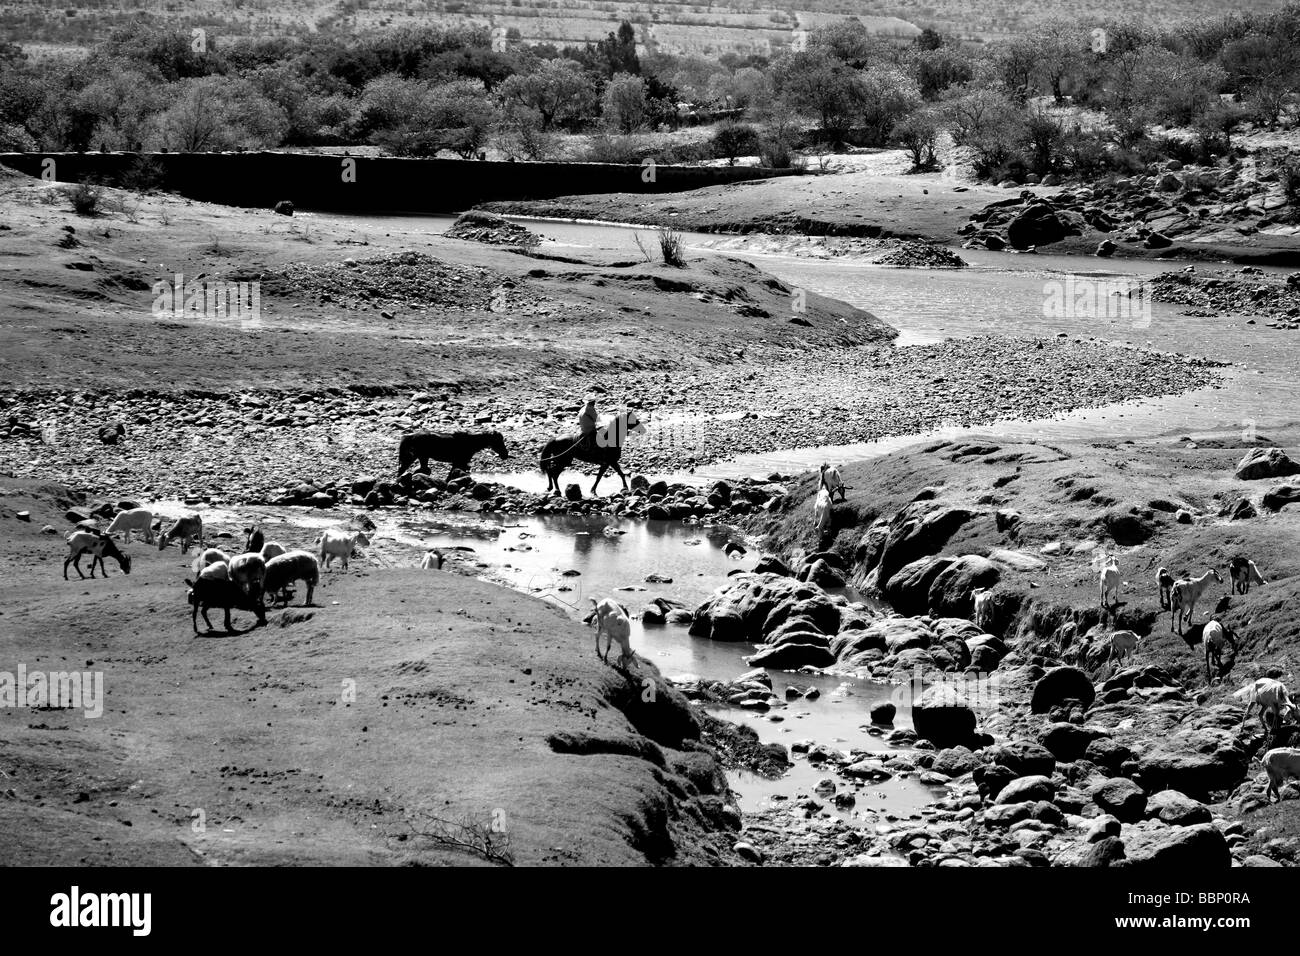 Río paisaje blanco y negro con caballos cruzando en una imagen nostalgia inspira desierto en paz bonito horizontes Foto de stock